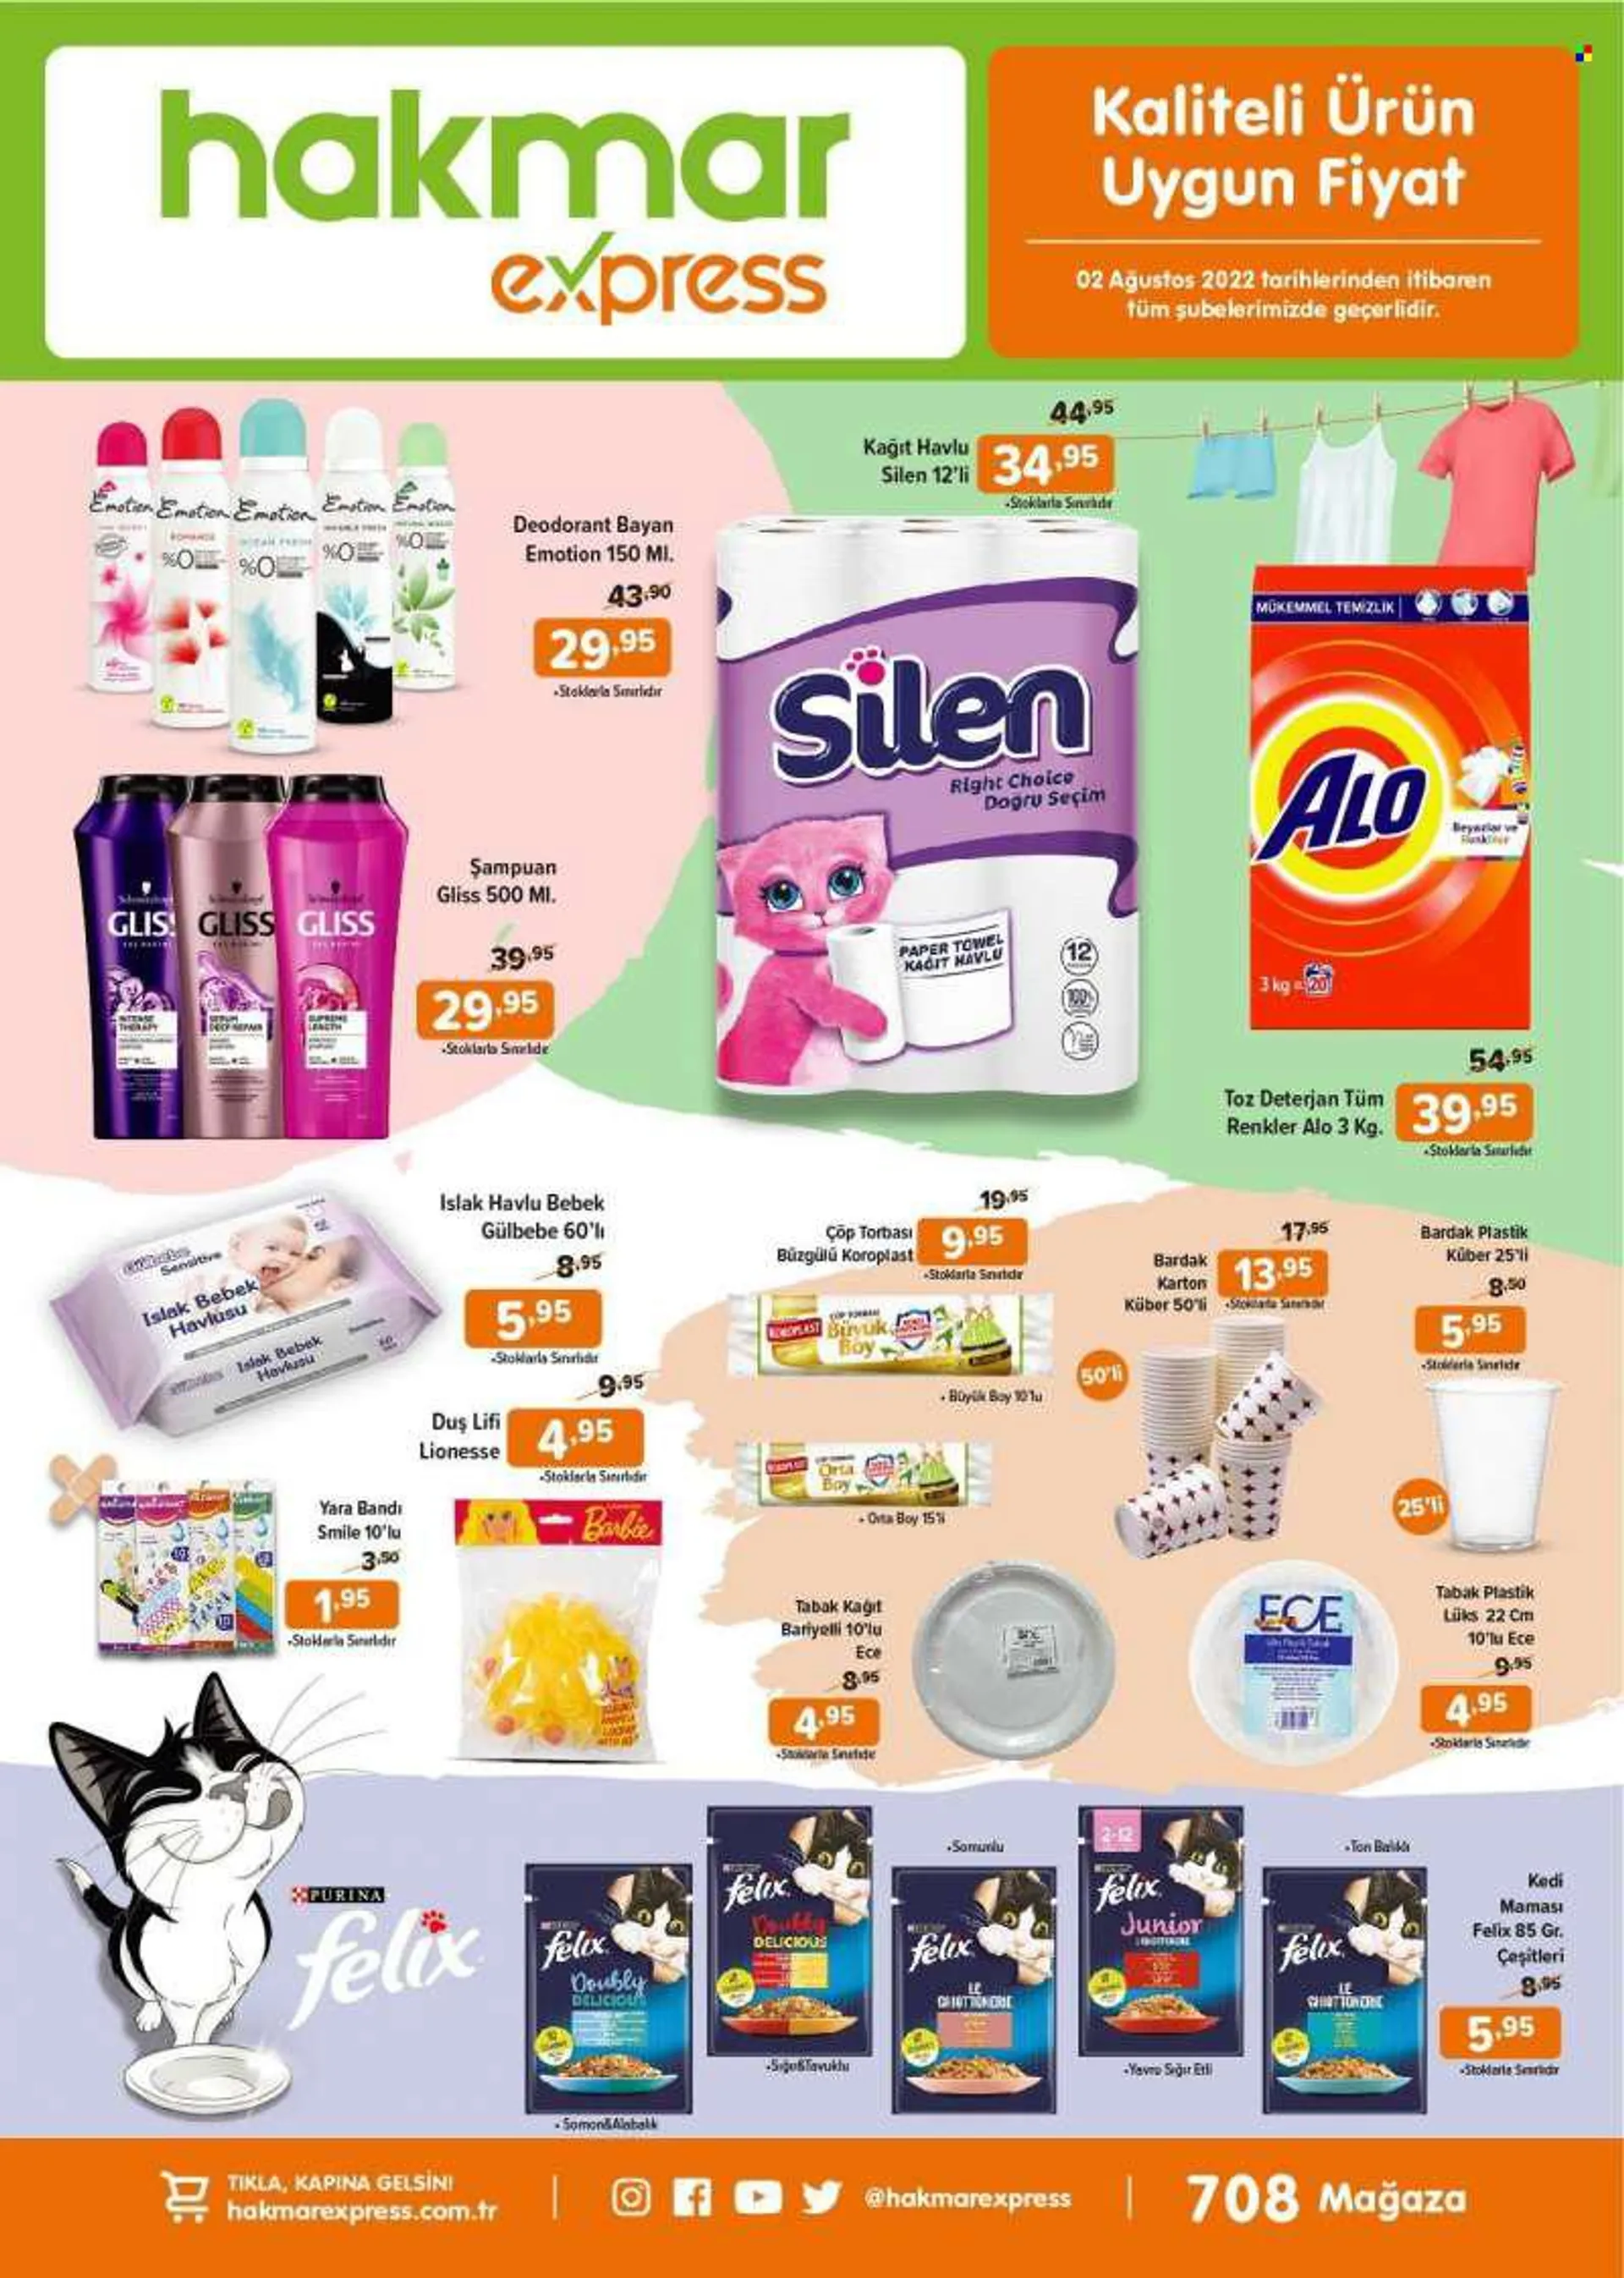 Hakmar Express aktüel ürünler, broşür  - 8.2.2022 - 8.15.2022 - Satıştaki ürünler - şampuan, somon, barbie, deodorant, alabalık, islak havlu, kedi maması. Sayfa 3.